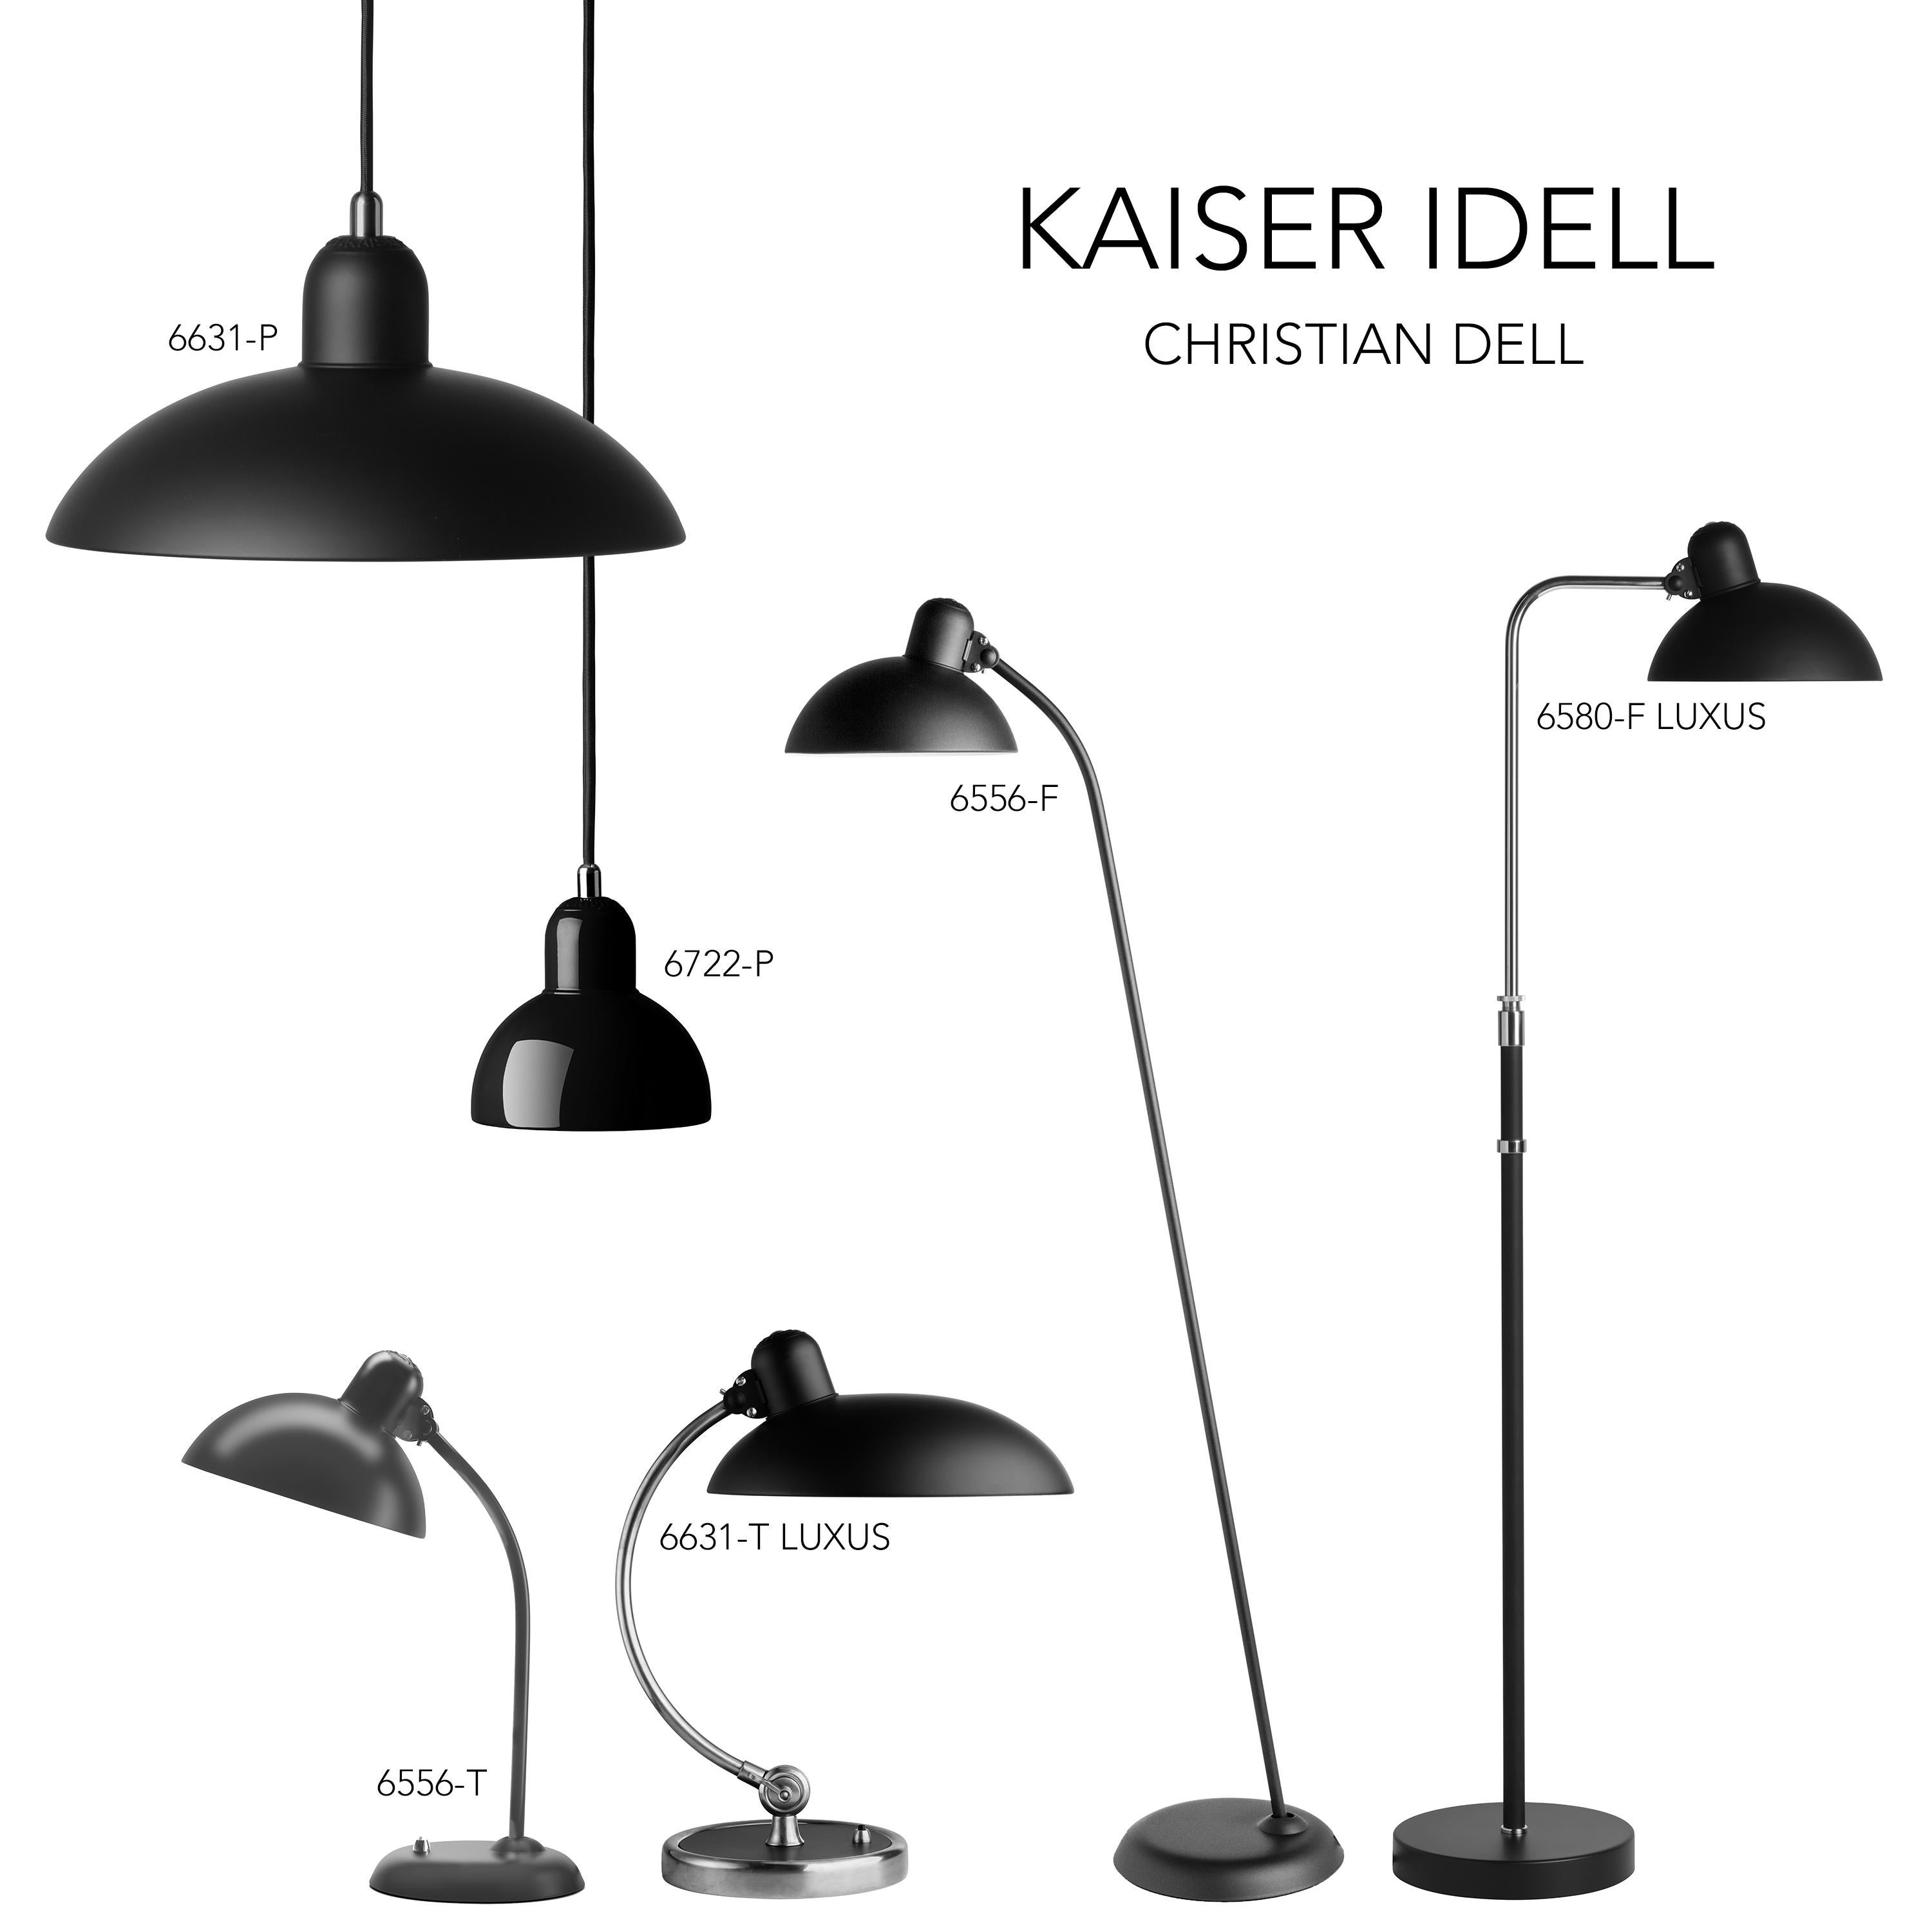 Christian Dell 'Kaiser Idell 6722-P' Pendant for Fritz Hansen in Black For Sale 9